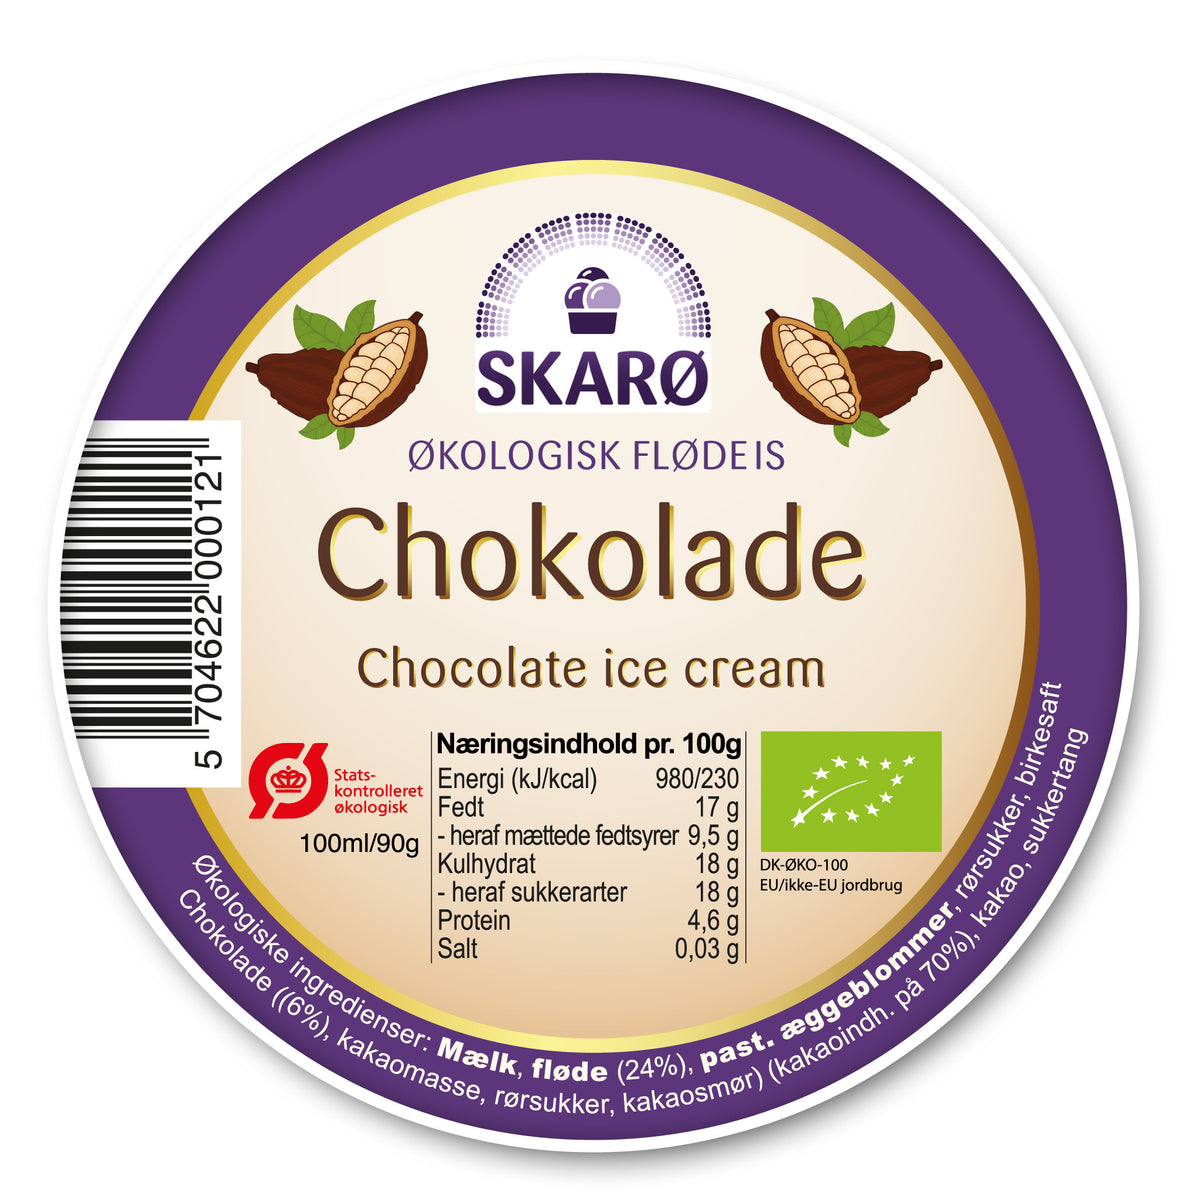 Økologisk Chokolade gourmetflødeis fra Skarø